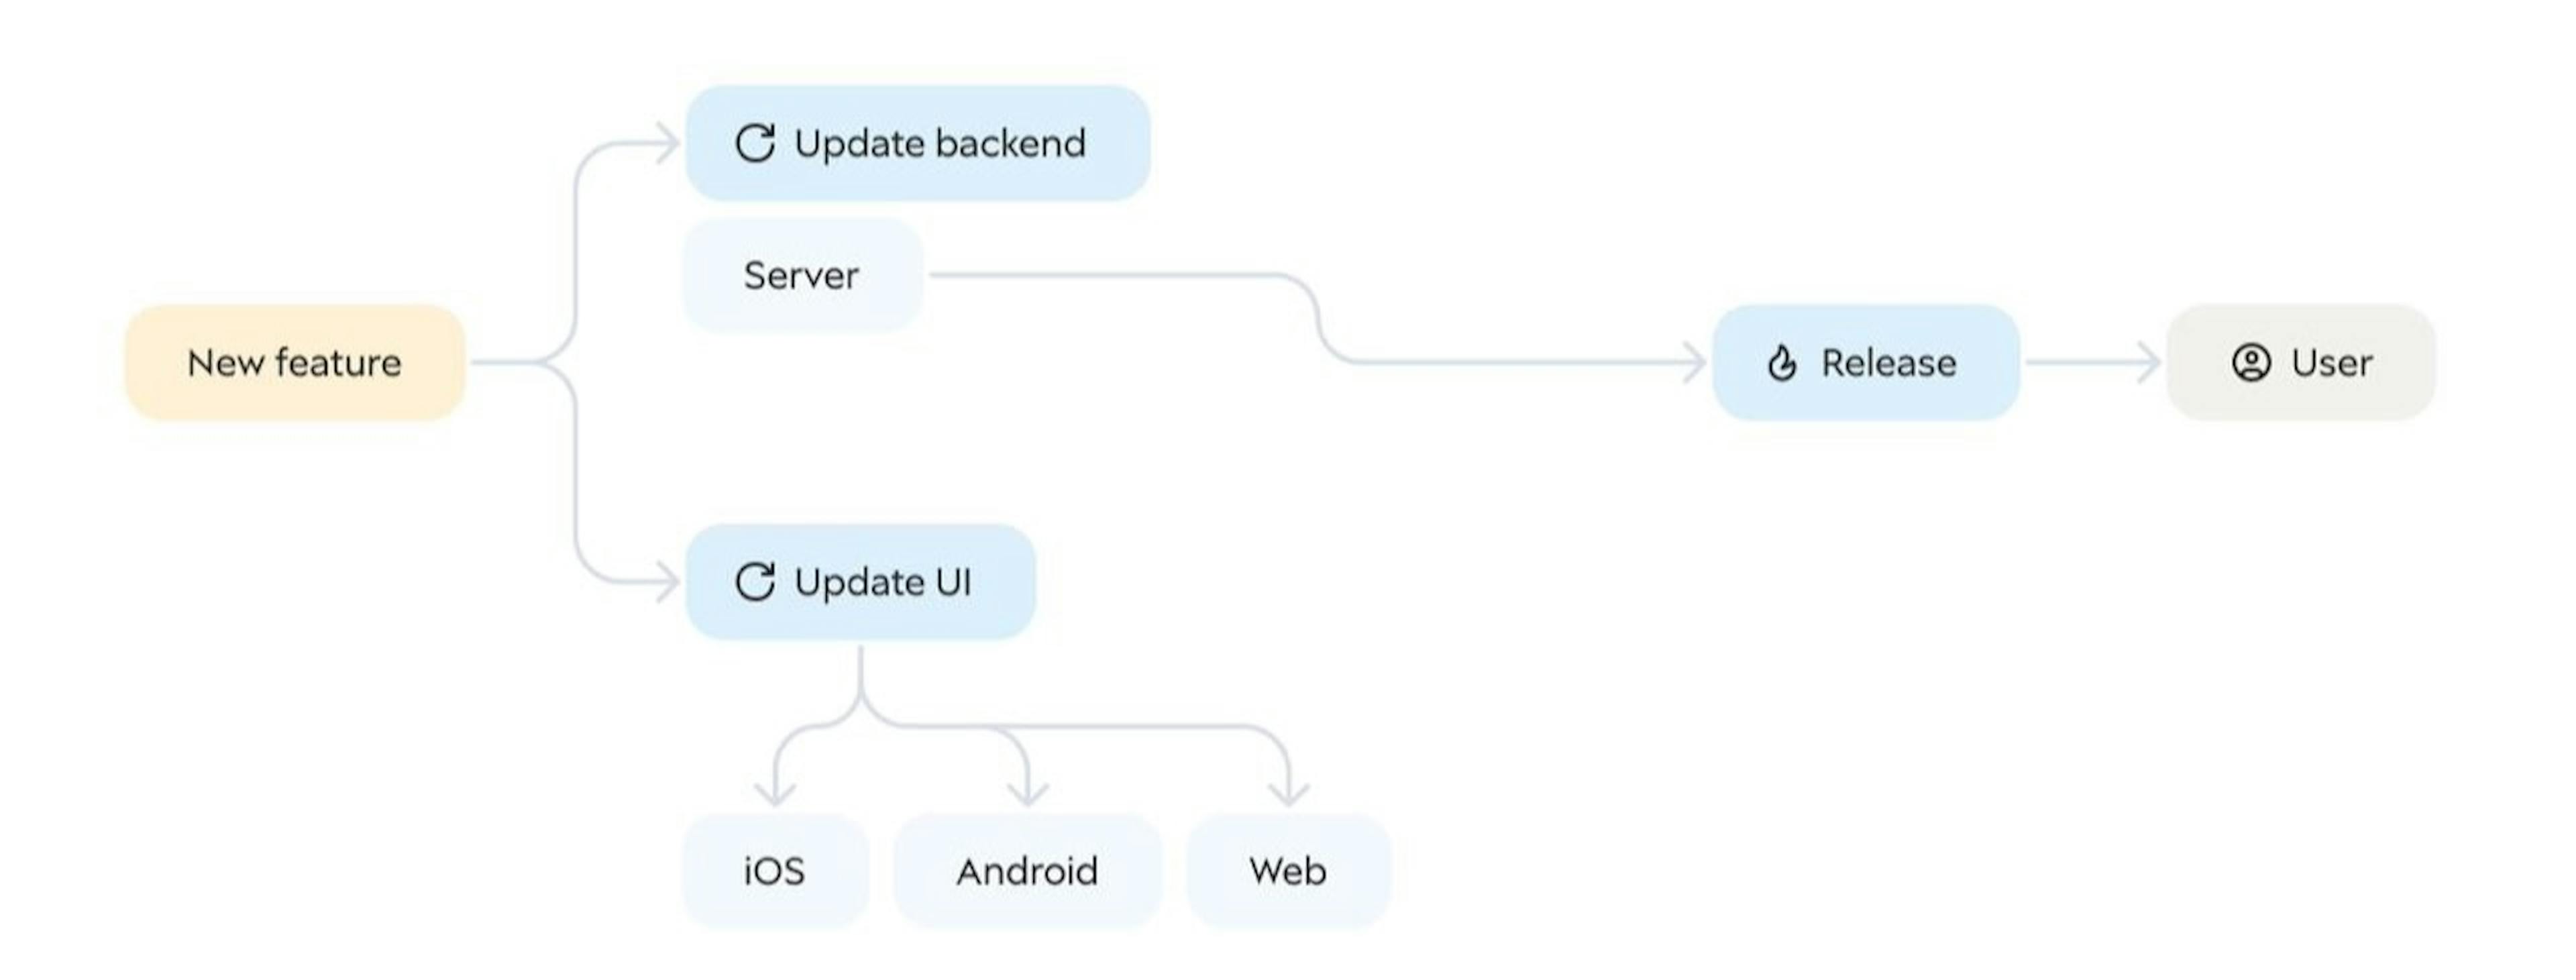 Modèle d'interface utilisateur piloté par le backend